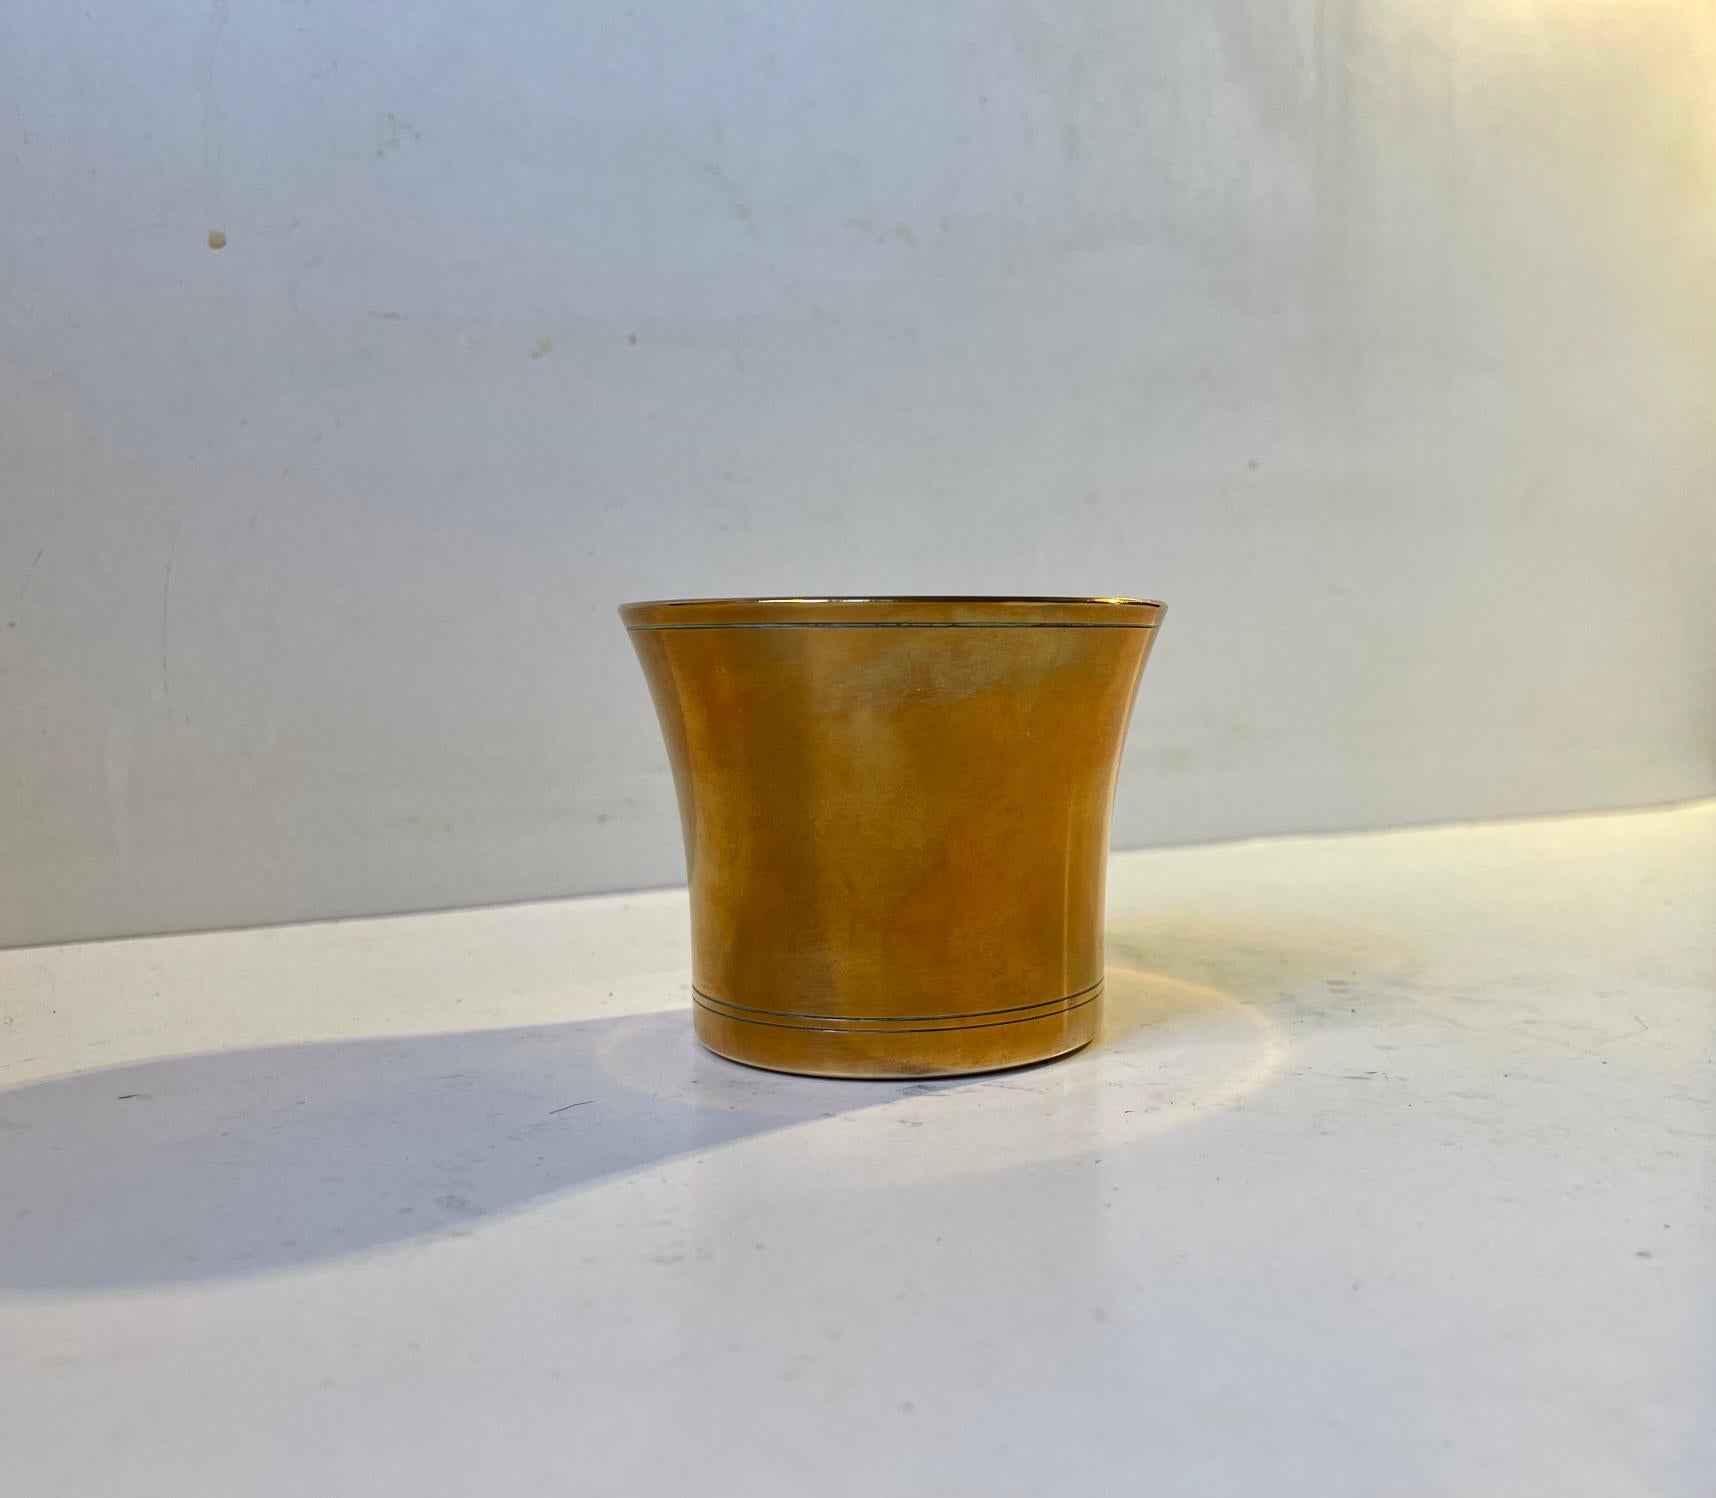 Petit vase patiné en bronze conçu par Just Andersen et fabriqué au Danemark dans les années 1930. Entièrement signé et numéroté à sa base. Mesures : H : 7 cm, D : 9 cm.